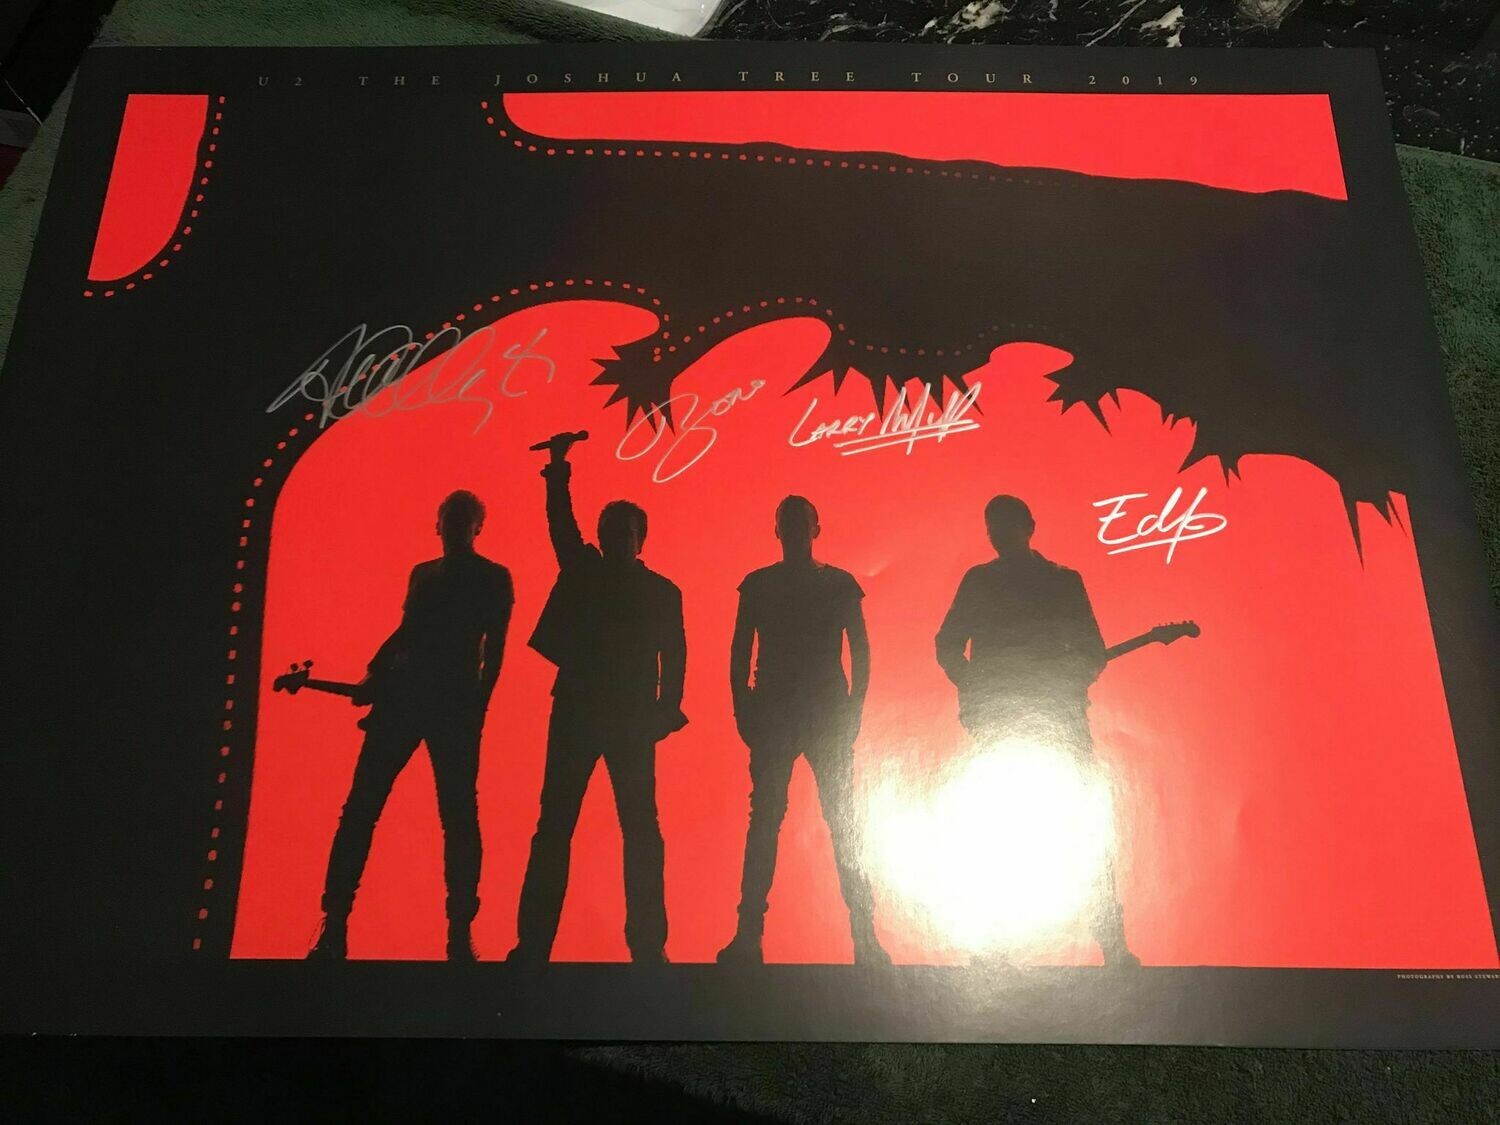 U2  signed record Autografi U2  Signed Record Autograph litograph U2 PRINT Stampa Autografata